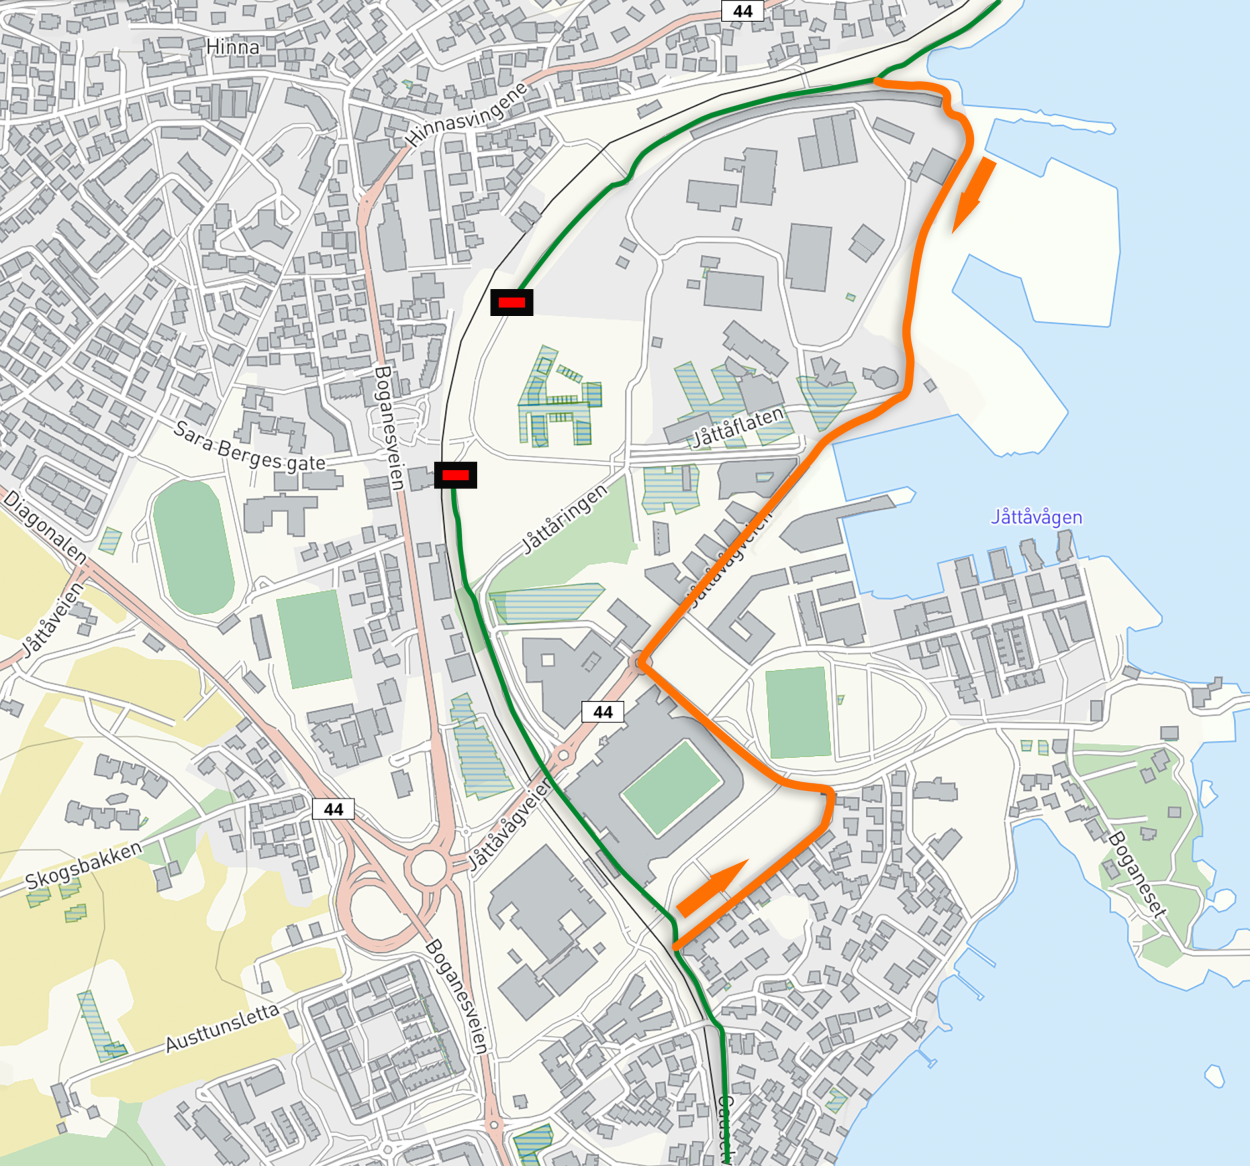 Kartet viser omdirigering av Gandsfjordruta i jåttavågen